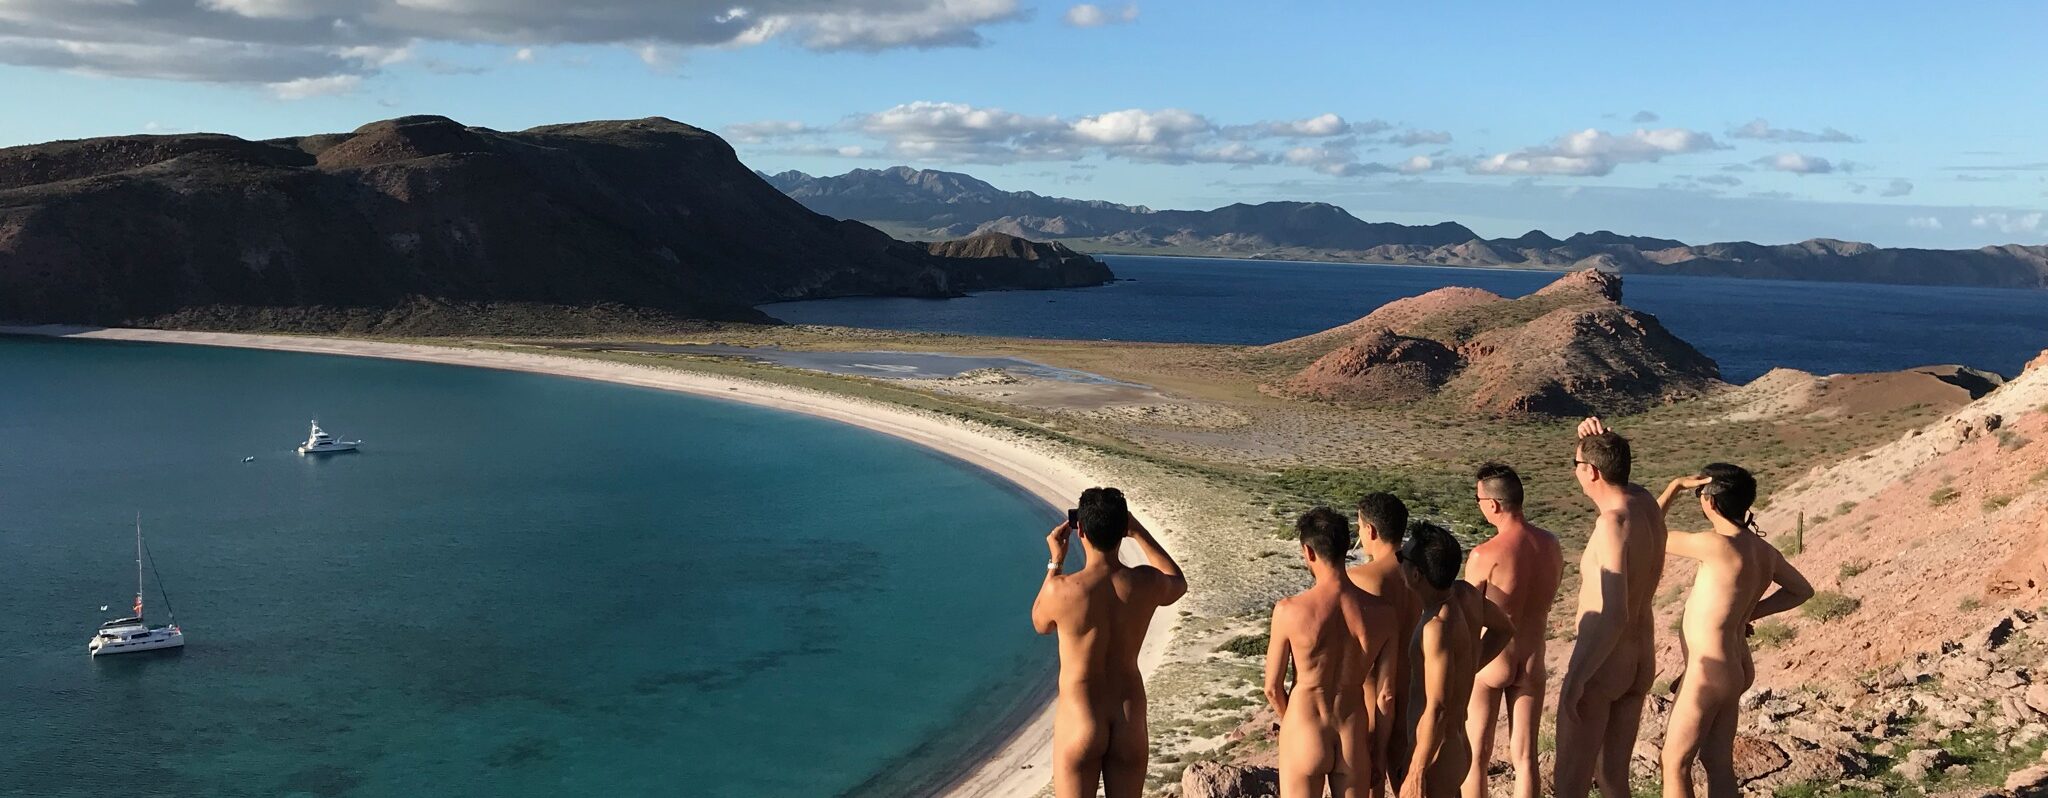 Saltyboys gay nudists hiking Baja California Mexico